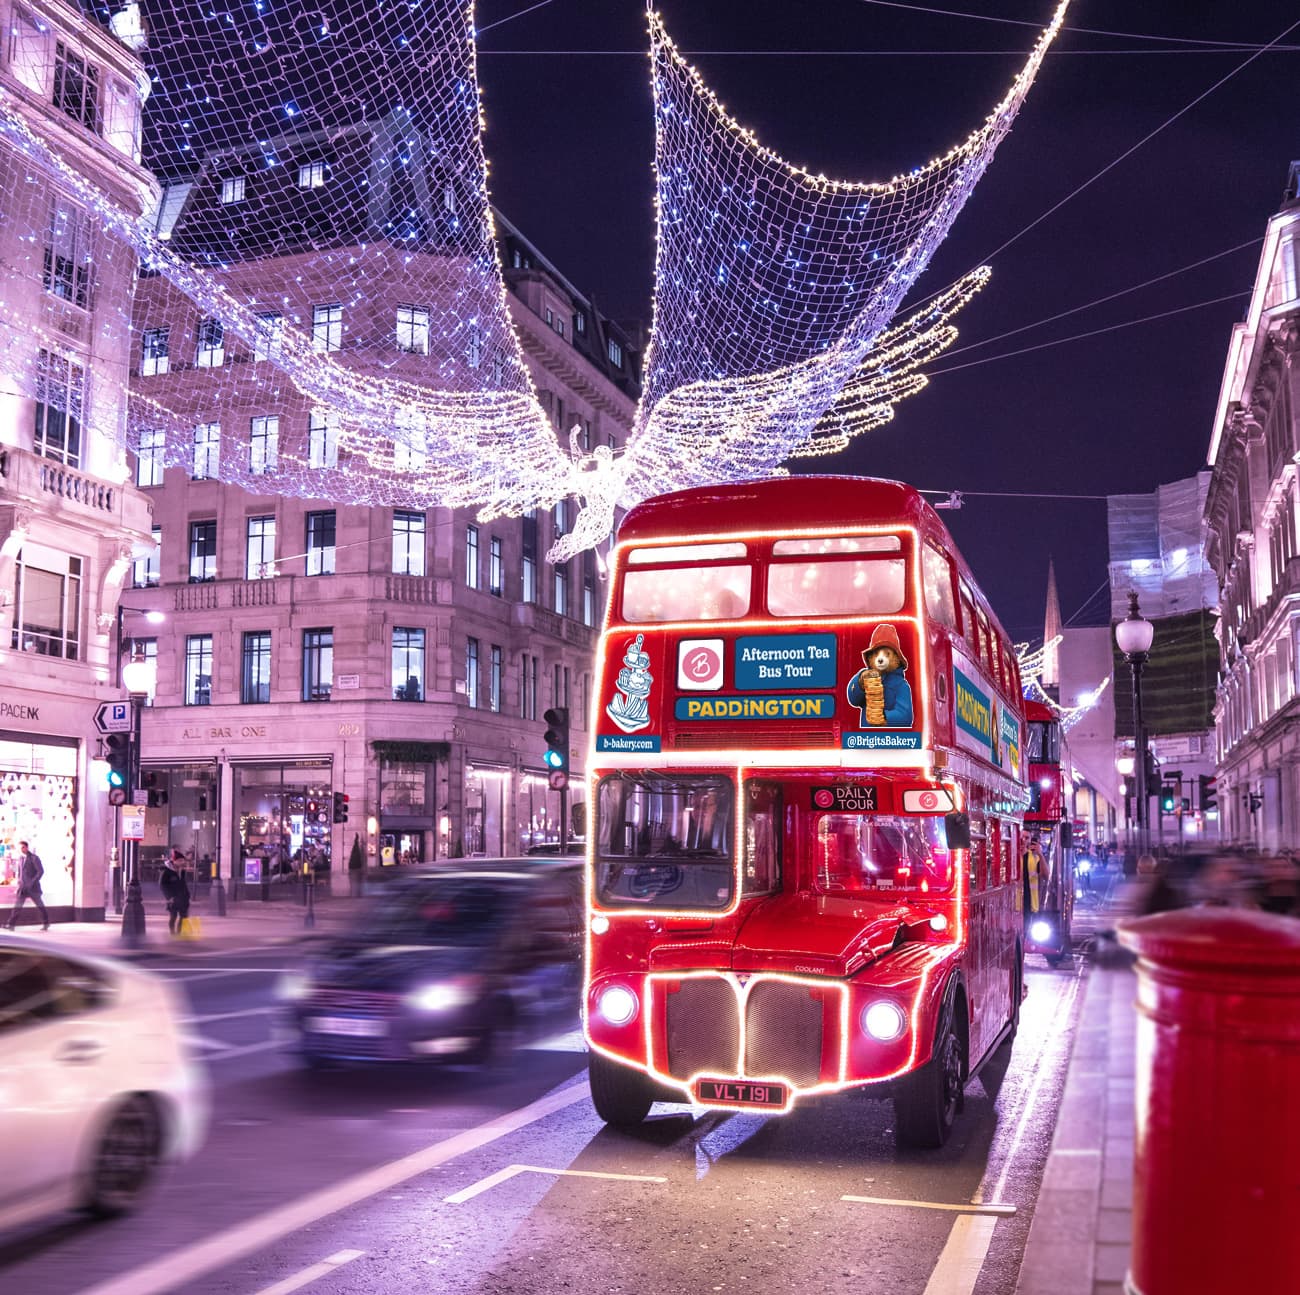 Which is the best London Bus Tour? Paddington Bus Tour